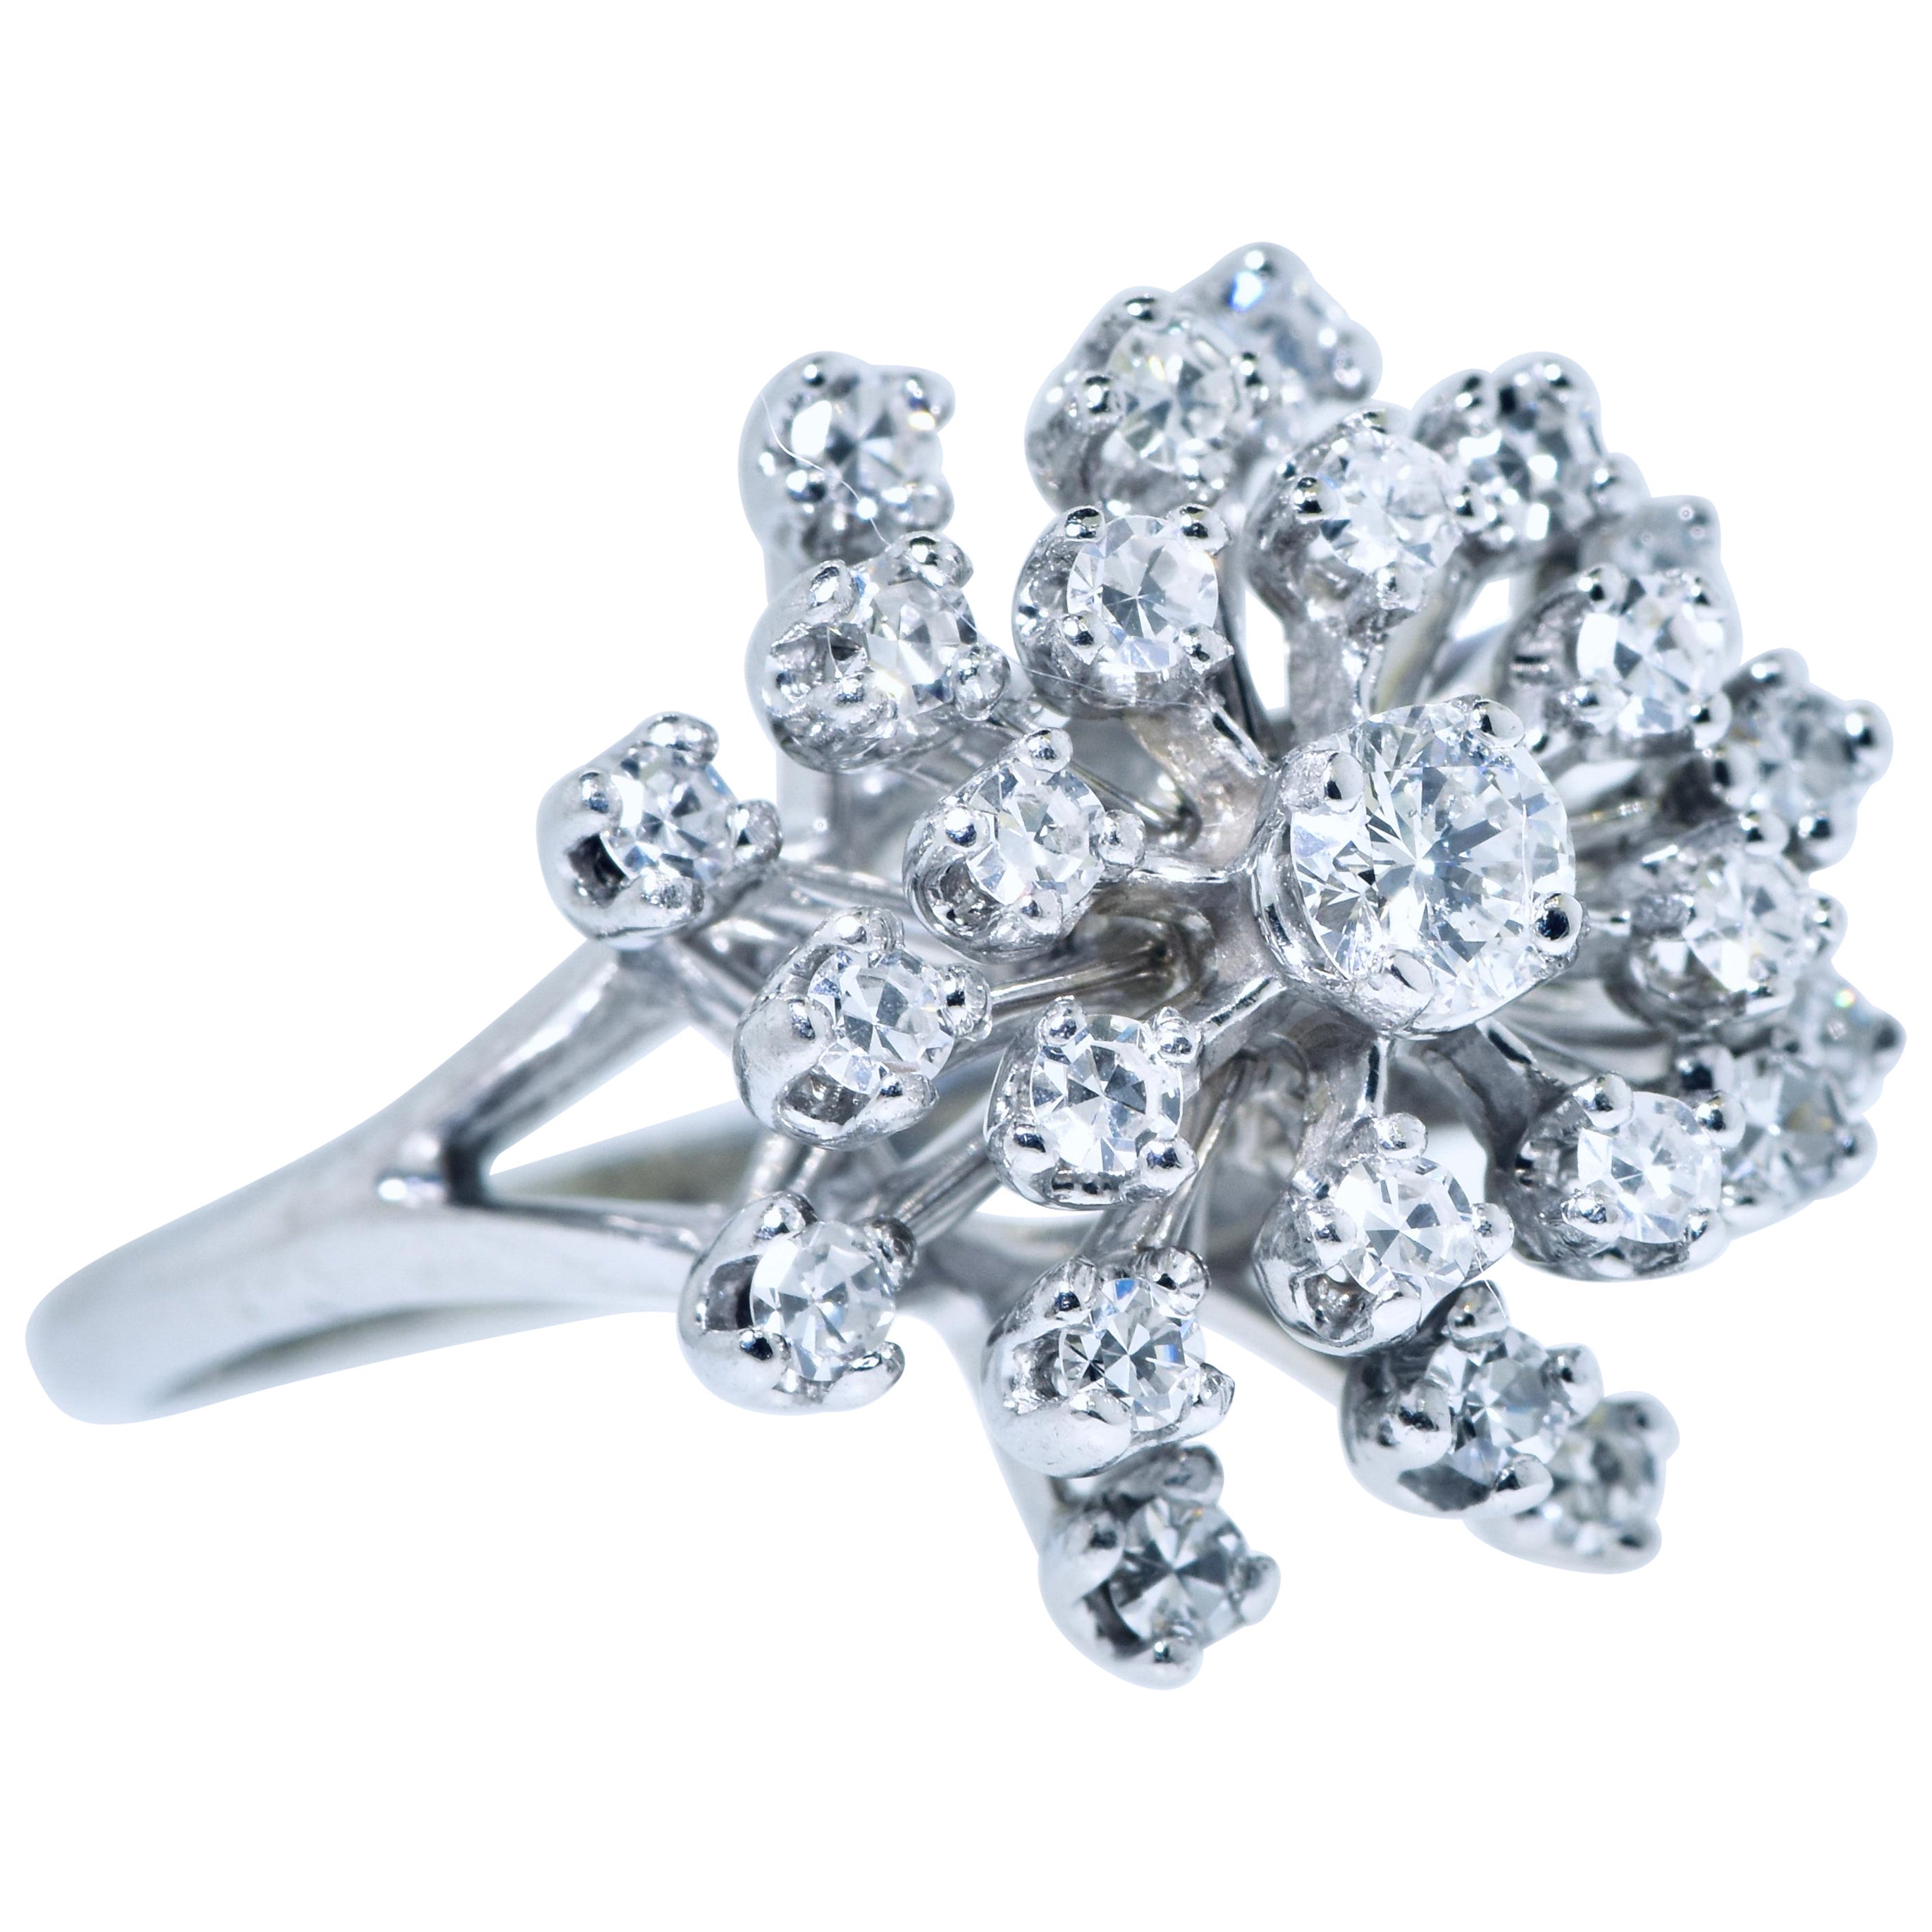 Diamant- und Weißgoldring mit 29 feinen weißen Diamanten im Brillantschliff, alle nahezu farblos (H/I) und leicht eingeschlossen.  Das Diamantgewicht dieser fein aufeinander abgestimmten Steine beträgt 0,80 Karat.  Der Ring hat ein sehr hübsches